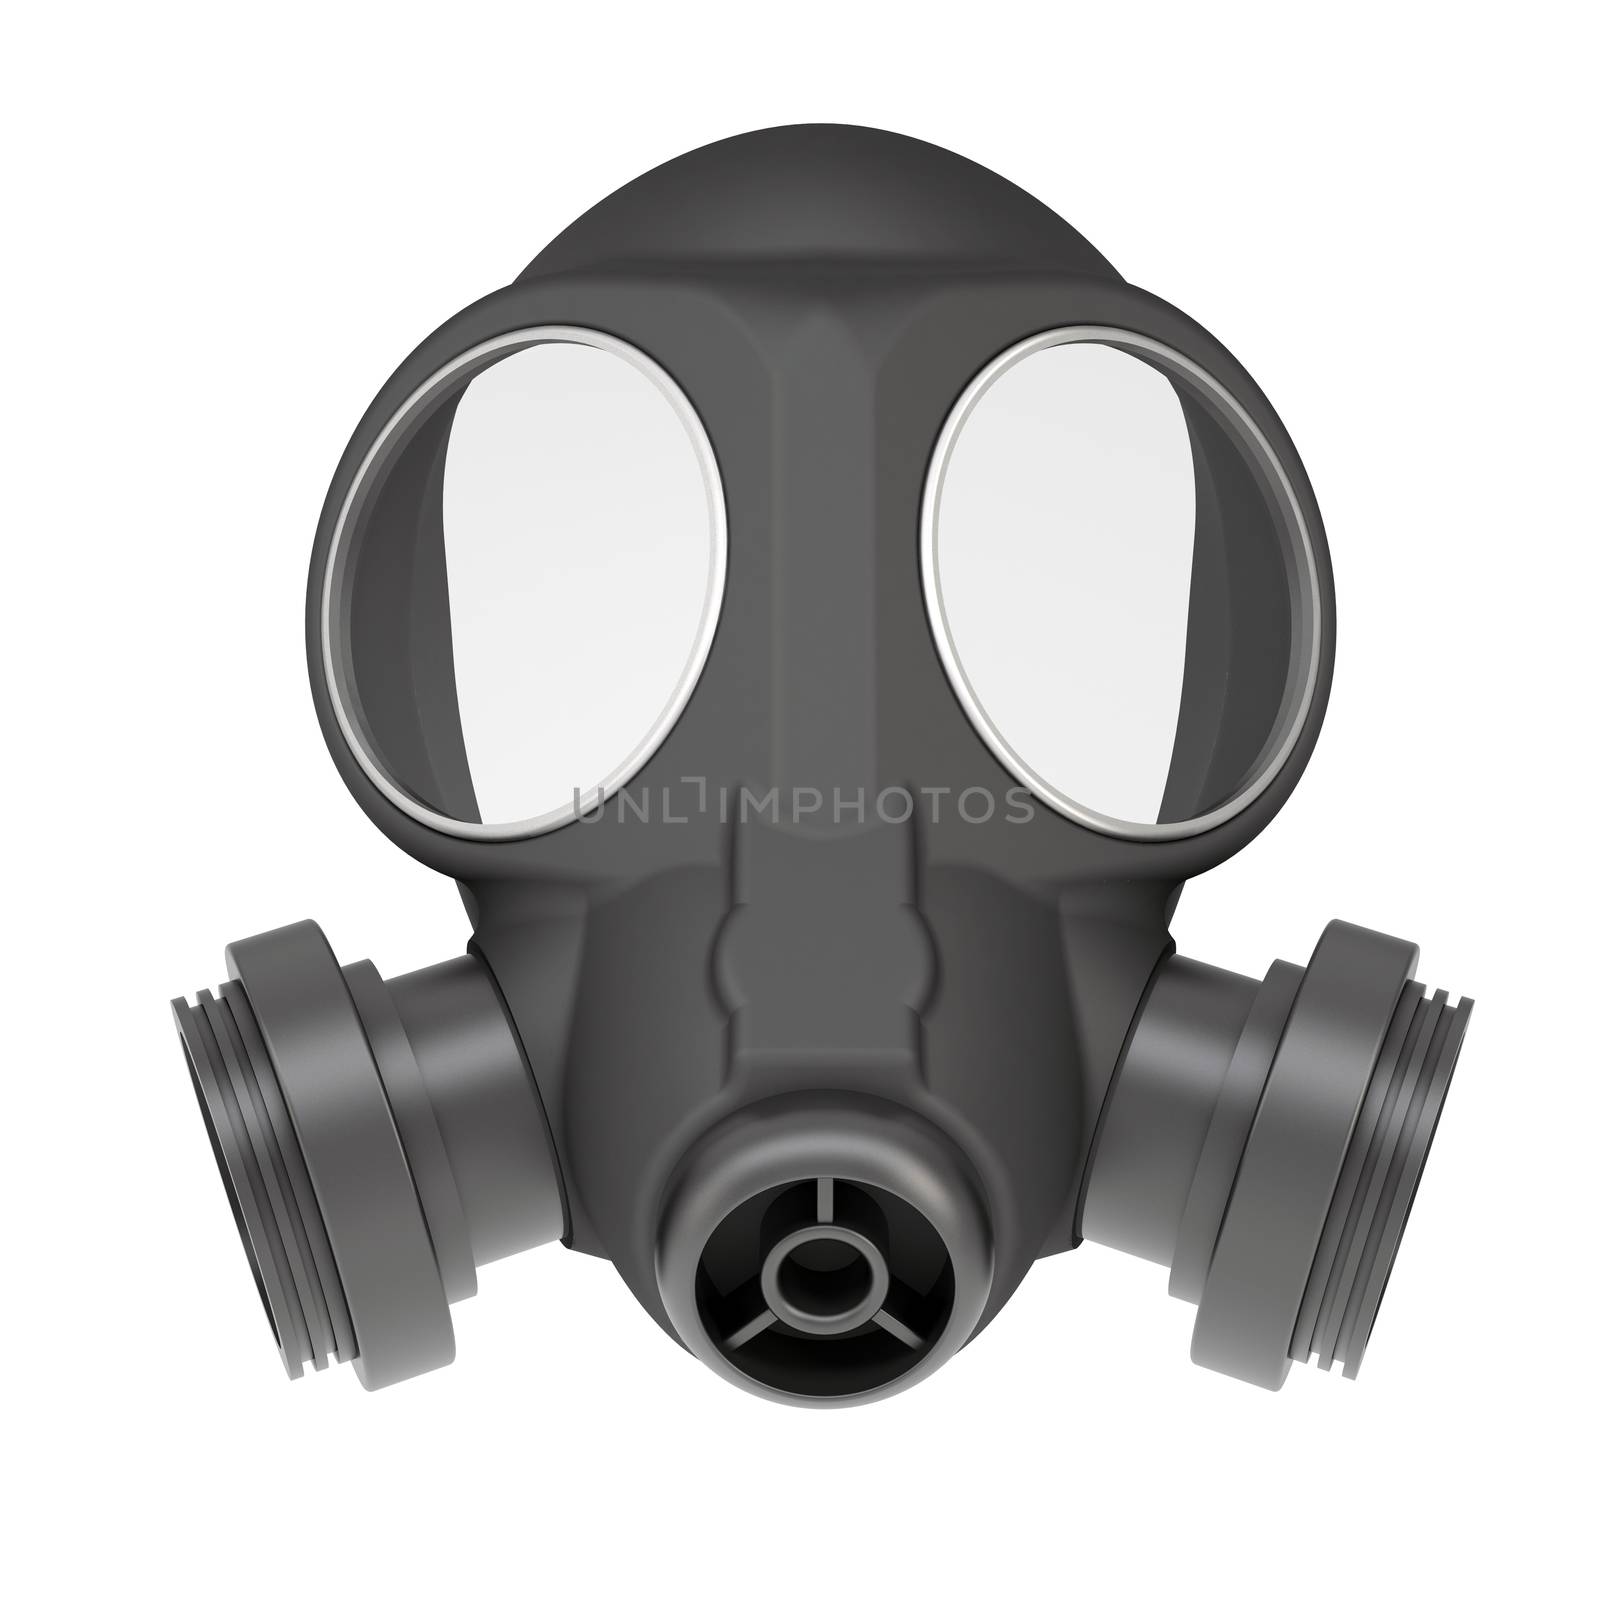 Gas mask by cherezoff